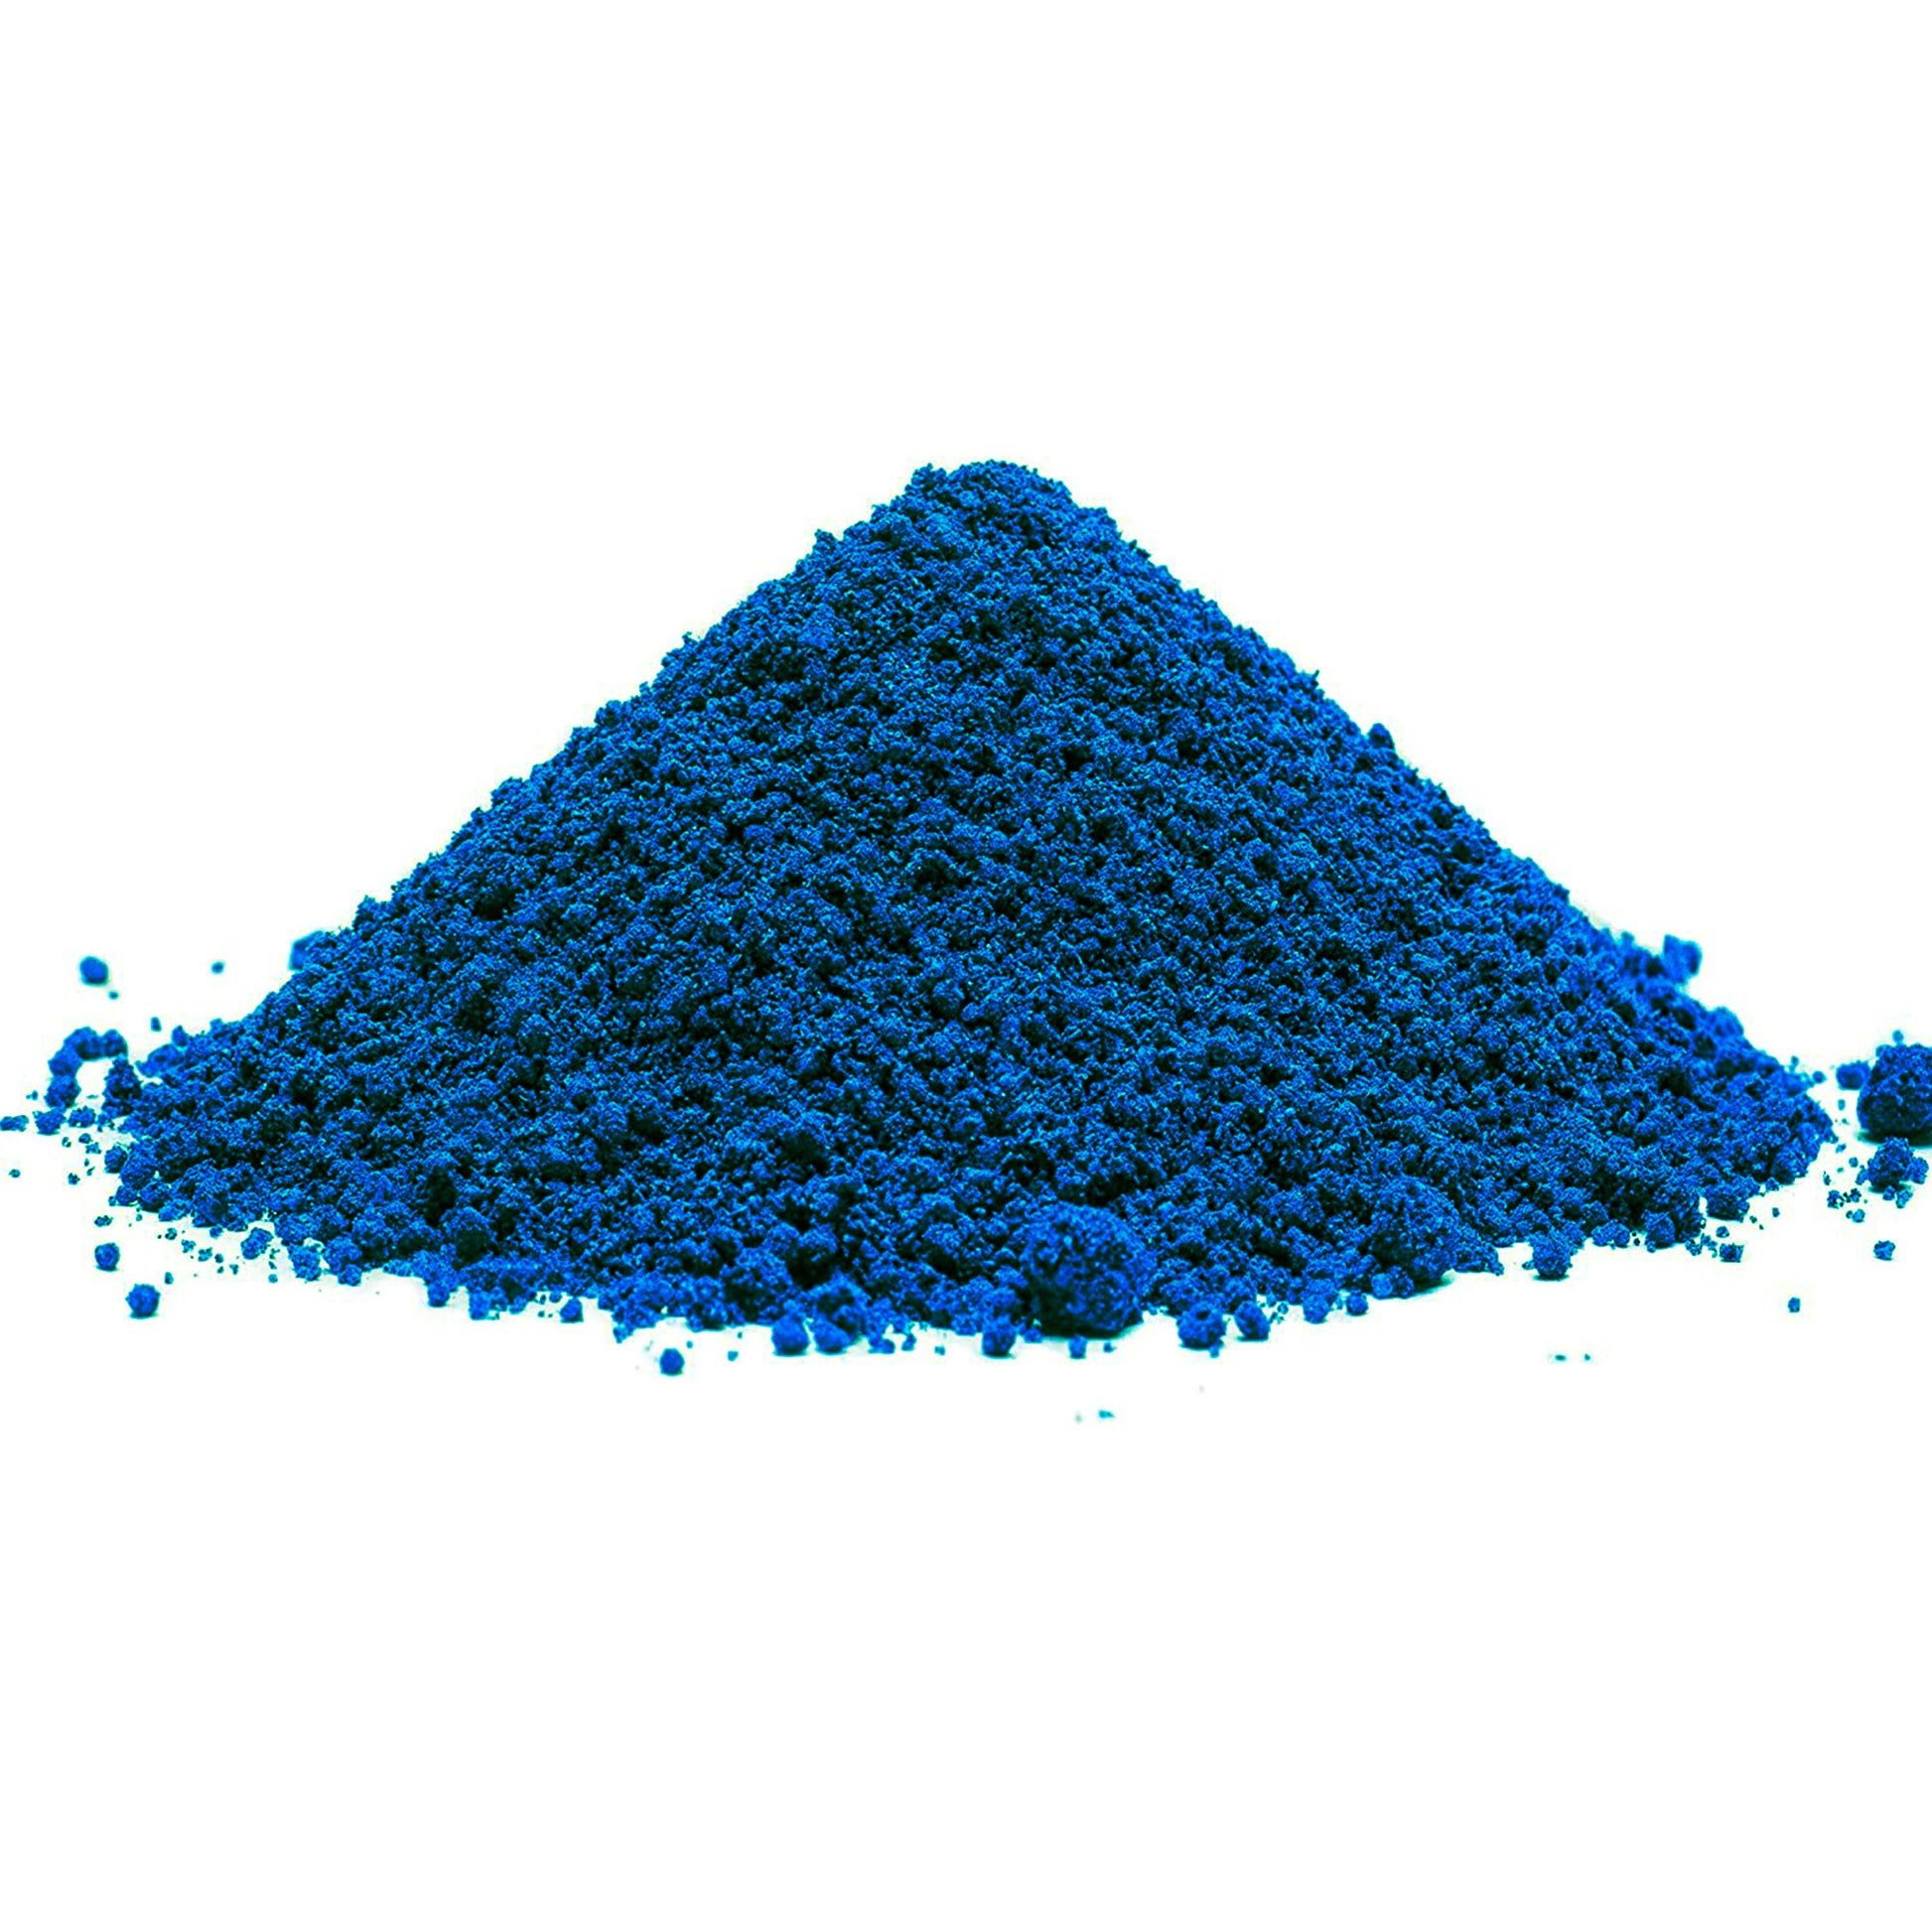 Blau Eisenoxidfarbe für Beton / Zement / Gips / Putz / Harz / Öl - 1kg Verpackung